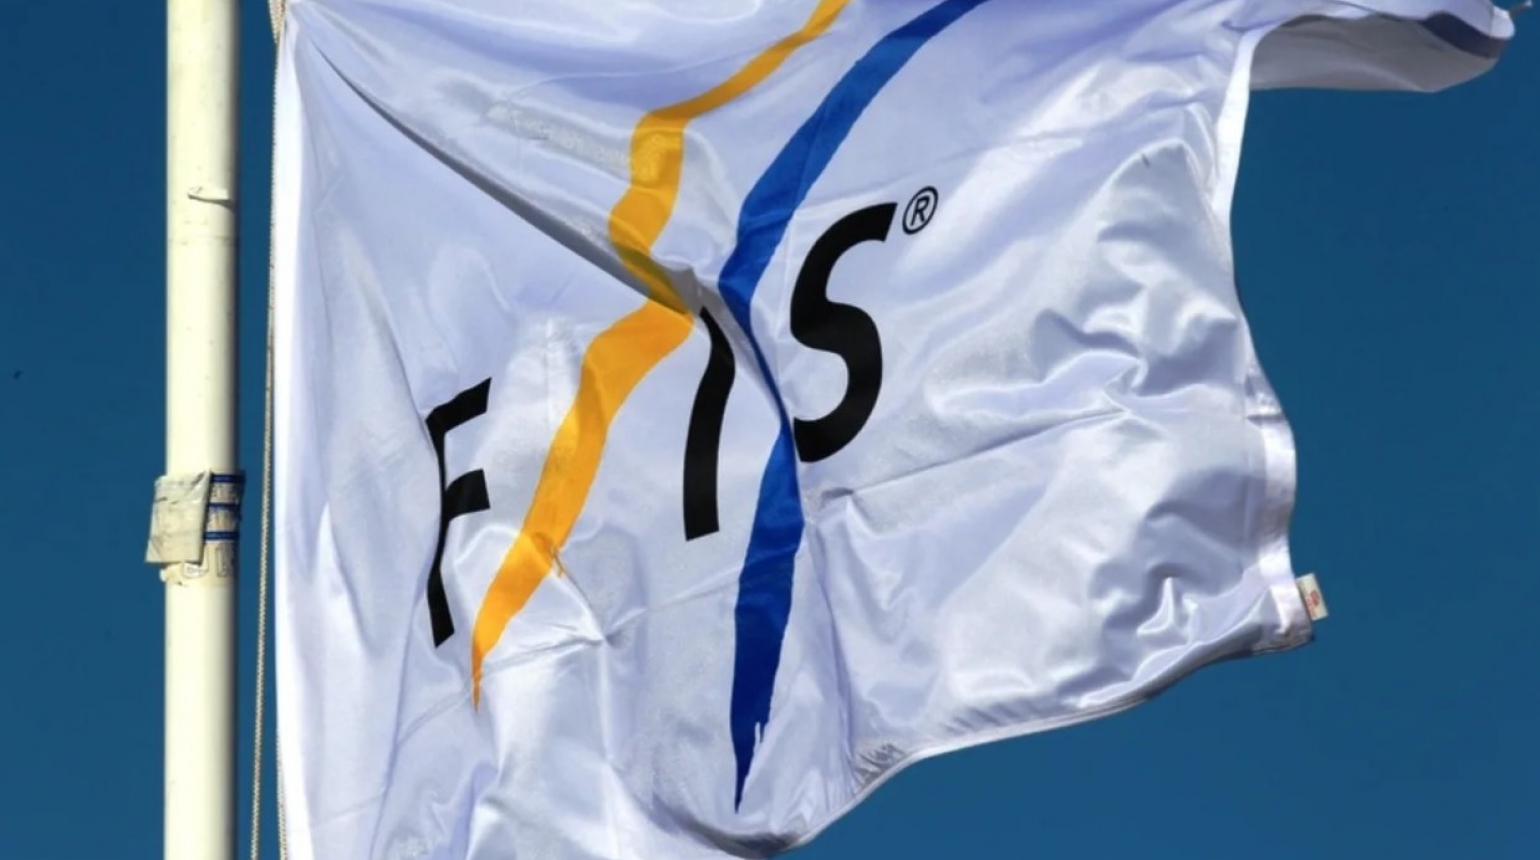 Mezinárodní lyžařská federace FIS zvolila novým prezidentem Johana Eliasche